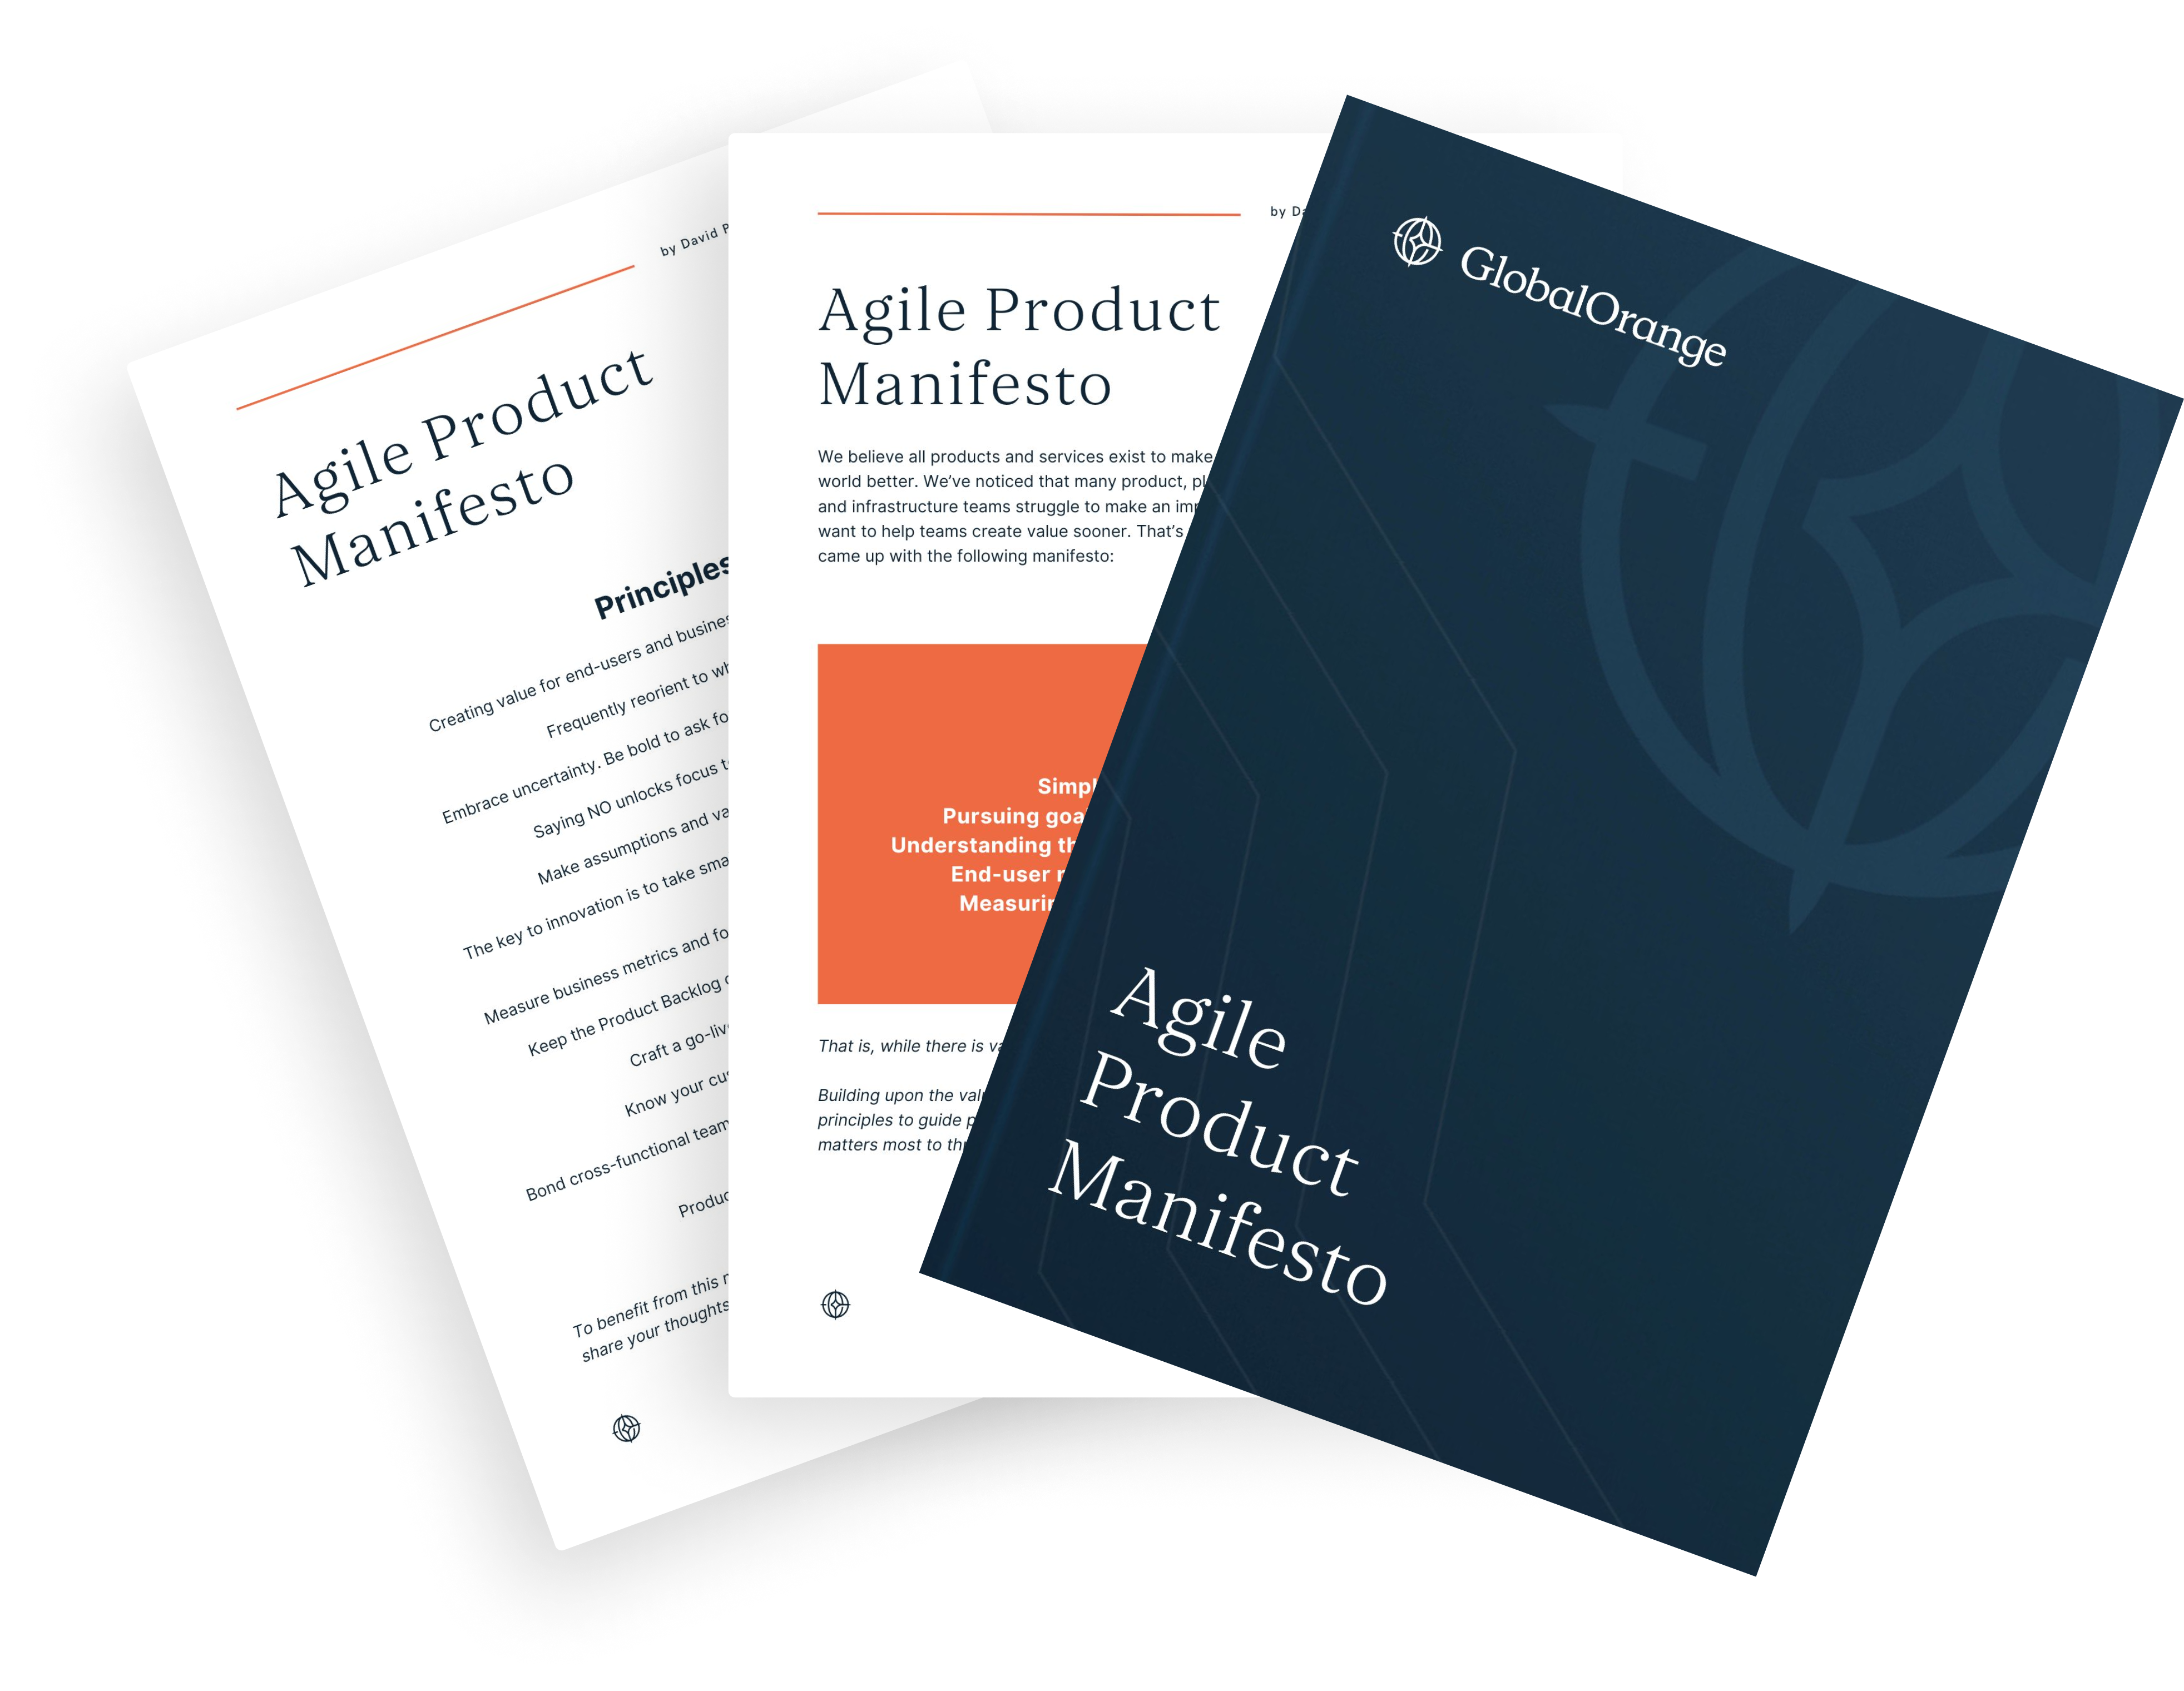 Pas het vernieuwde Agile Product Manifesto toe om sneller waarde te creëren